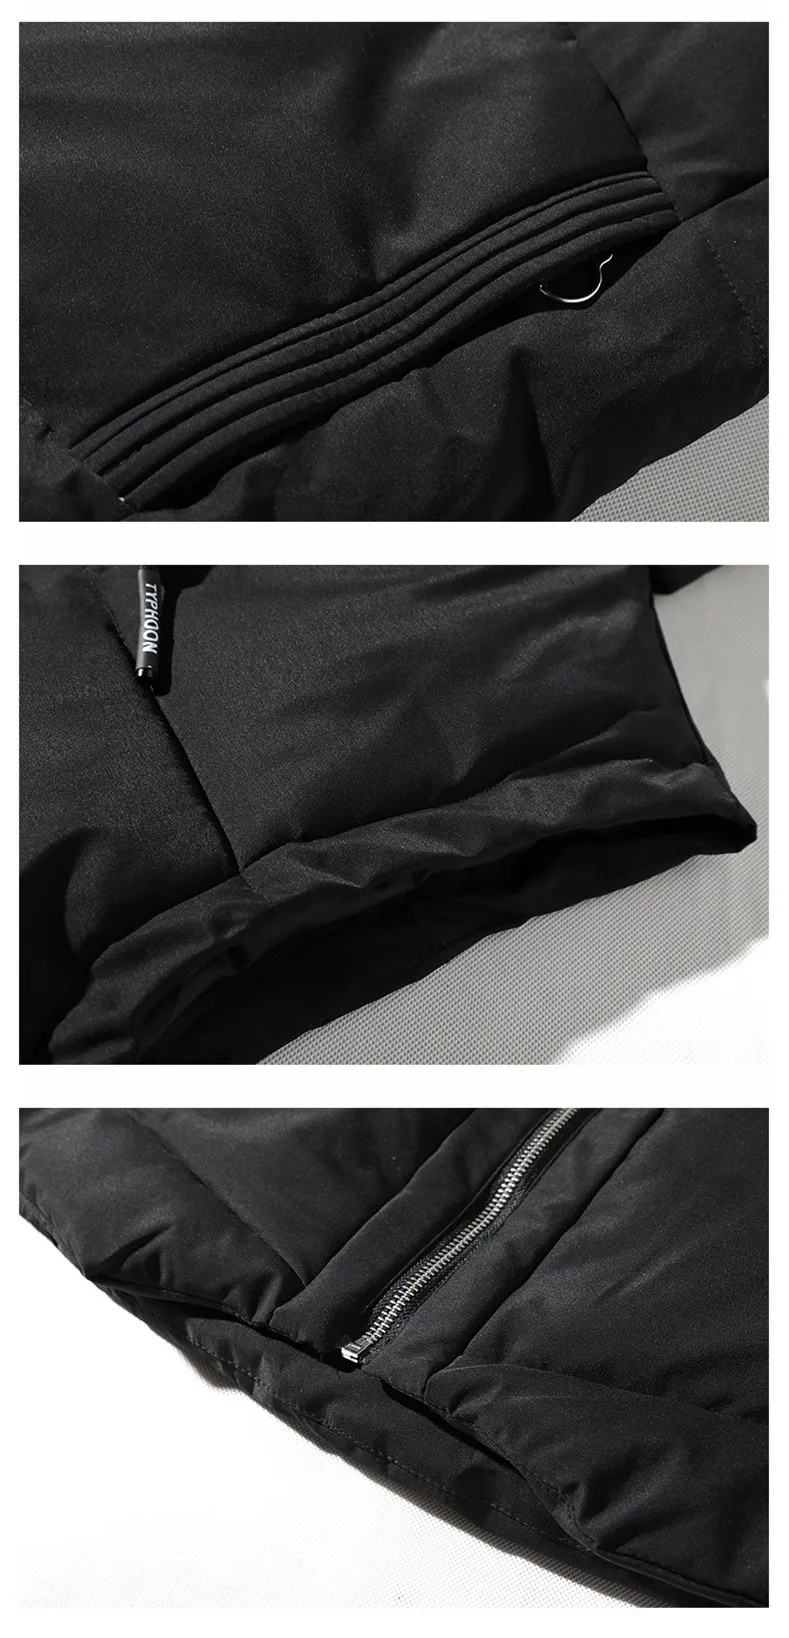 Una Reta/мужская жилетка с капюшоном, новая зимняя теплая жилетка без рукавов в стиле хип-хоп, Мужская жилетка, плюс размер, Модный повседневный жилет